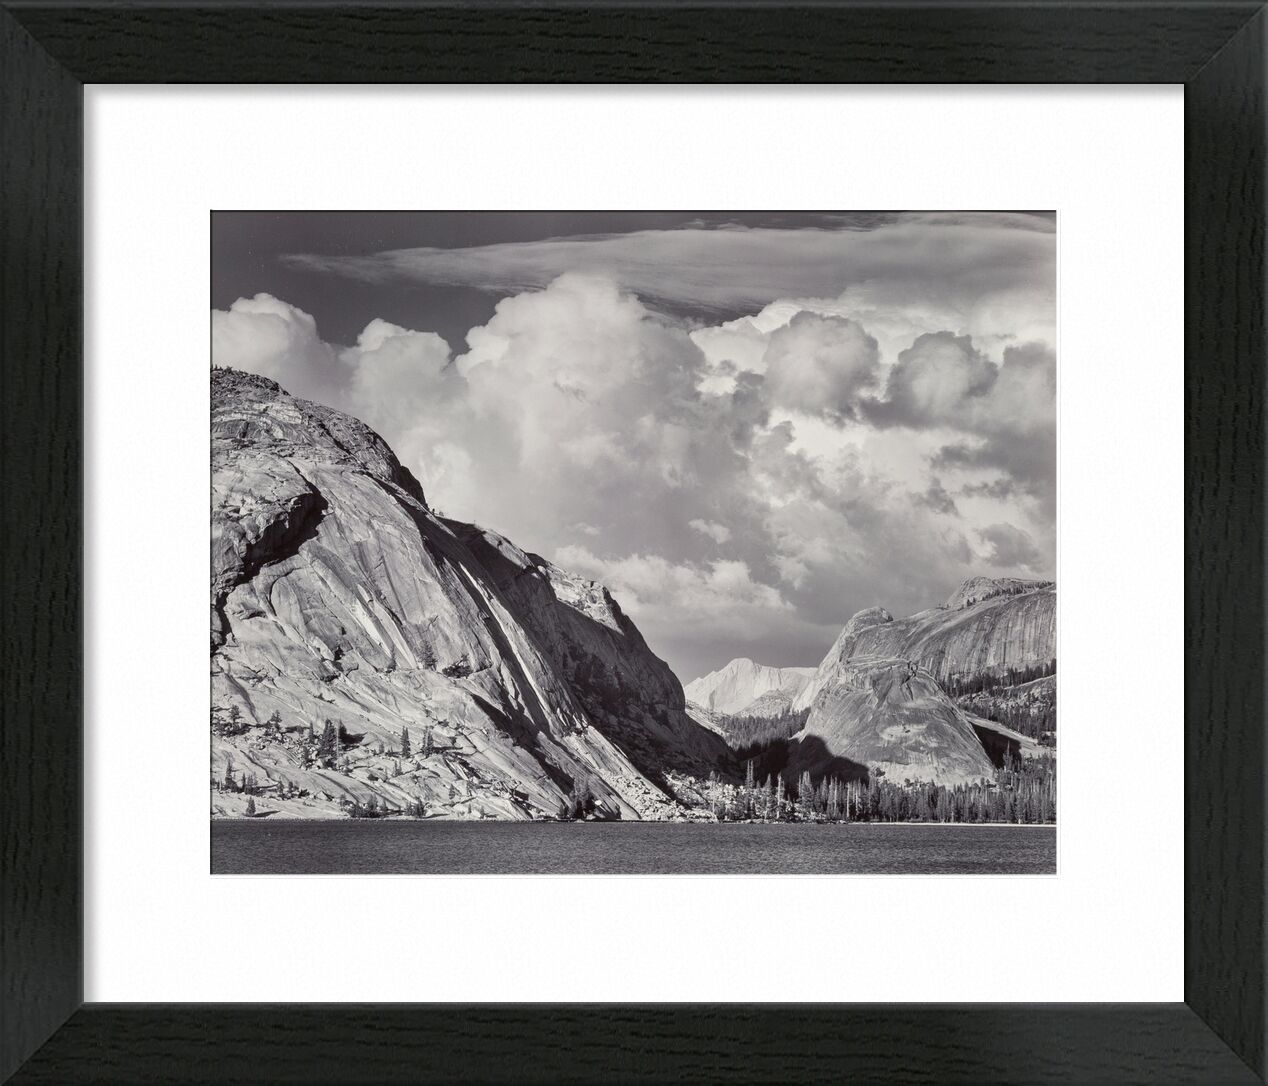 Tenaya-See, Yosemite-Nationalpark, Kalifornien, 1946 - Ansel Adams von Bildende Kunst, Prodi Art, Schwarz und weiß, Wolken, Berge, Tal, Park, adams, ANSEL ADAMS